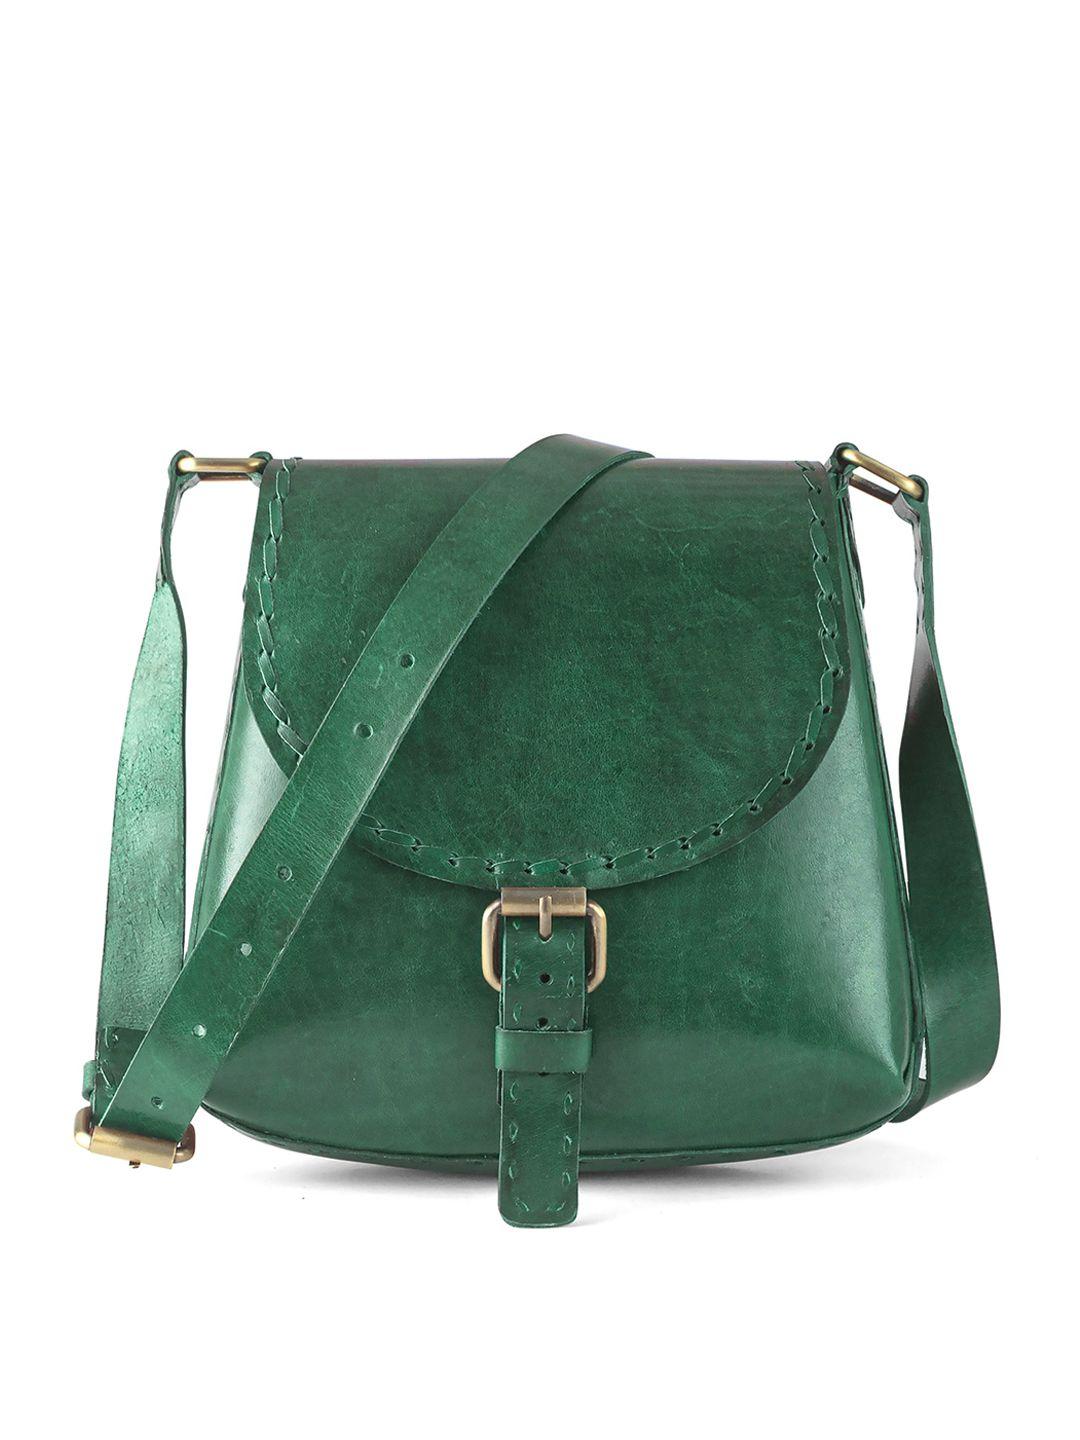 goatter green leather oversized shopper sling bag